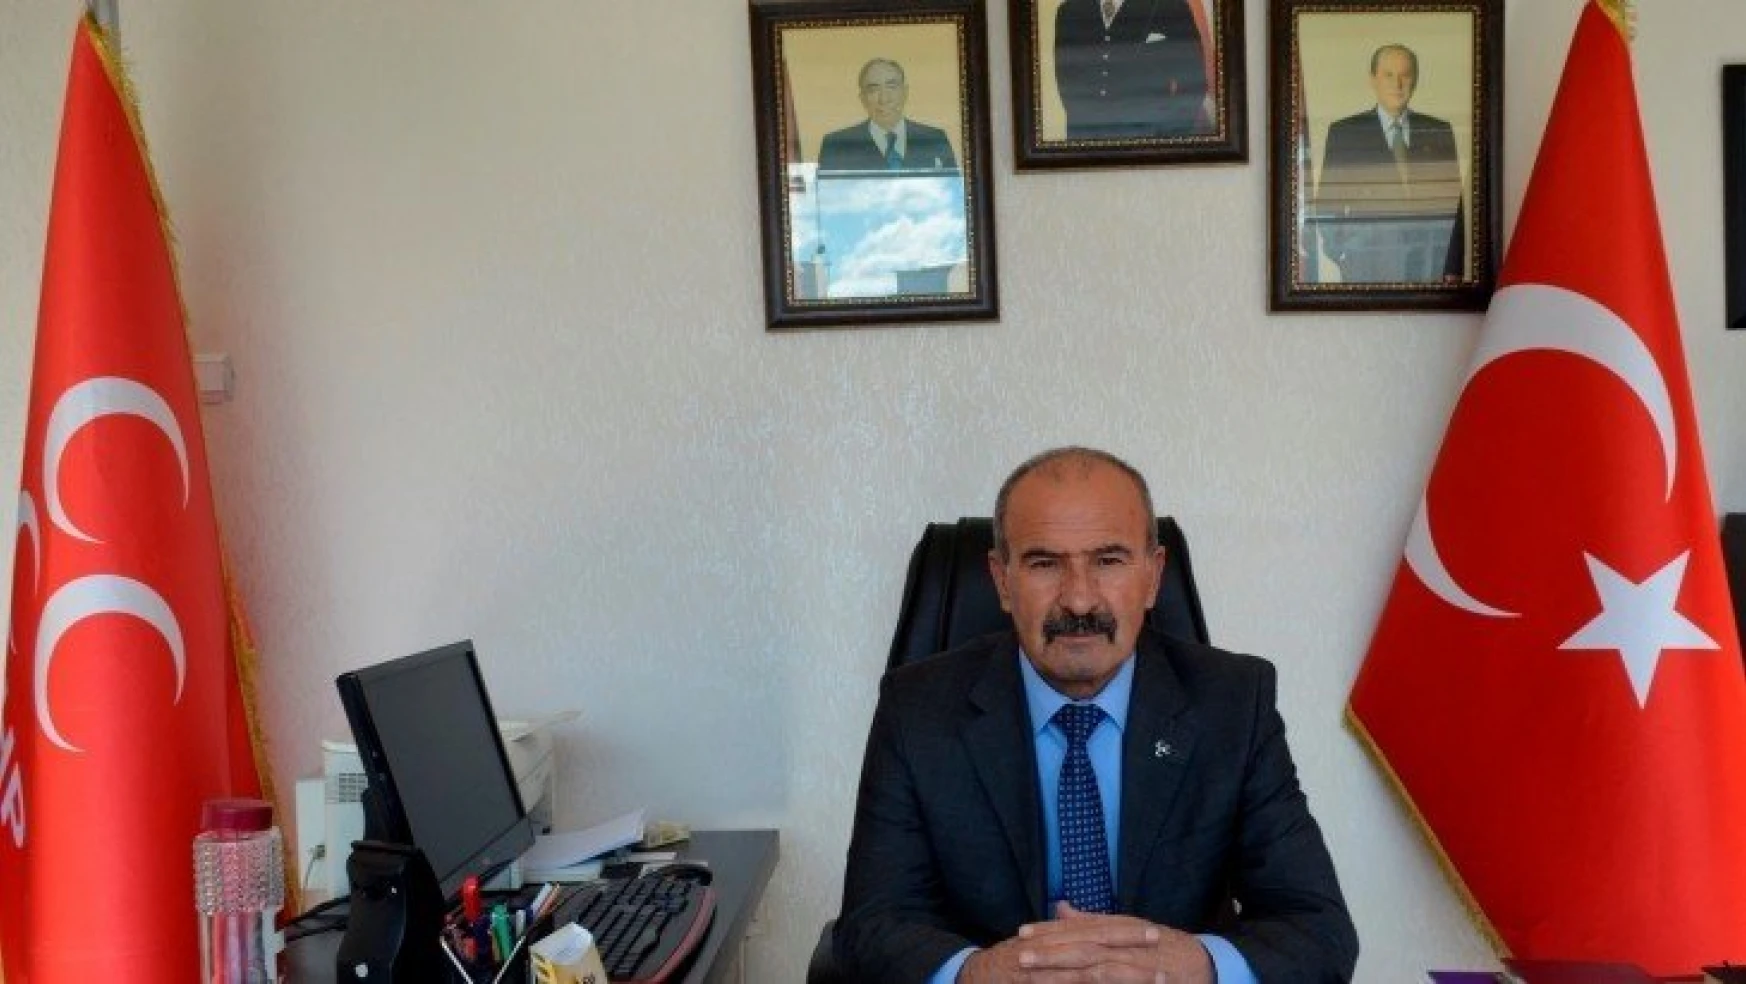 Başkan Kaya, Alpaslan Türkeş'in Vefatı İle Bir Mesaj Yayınladı